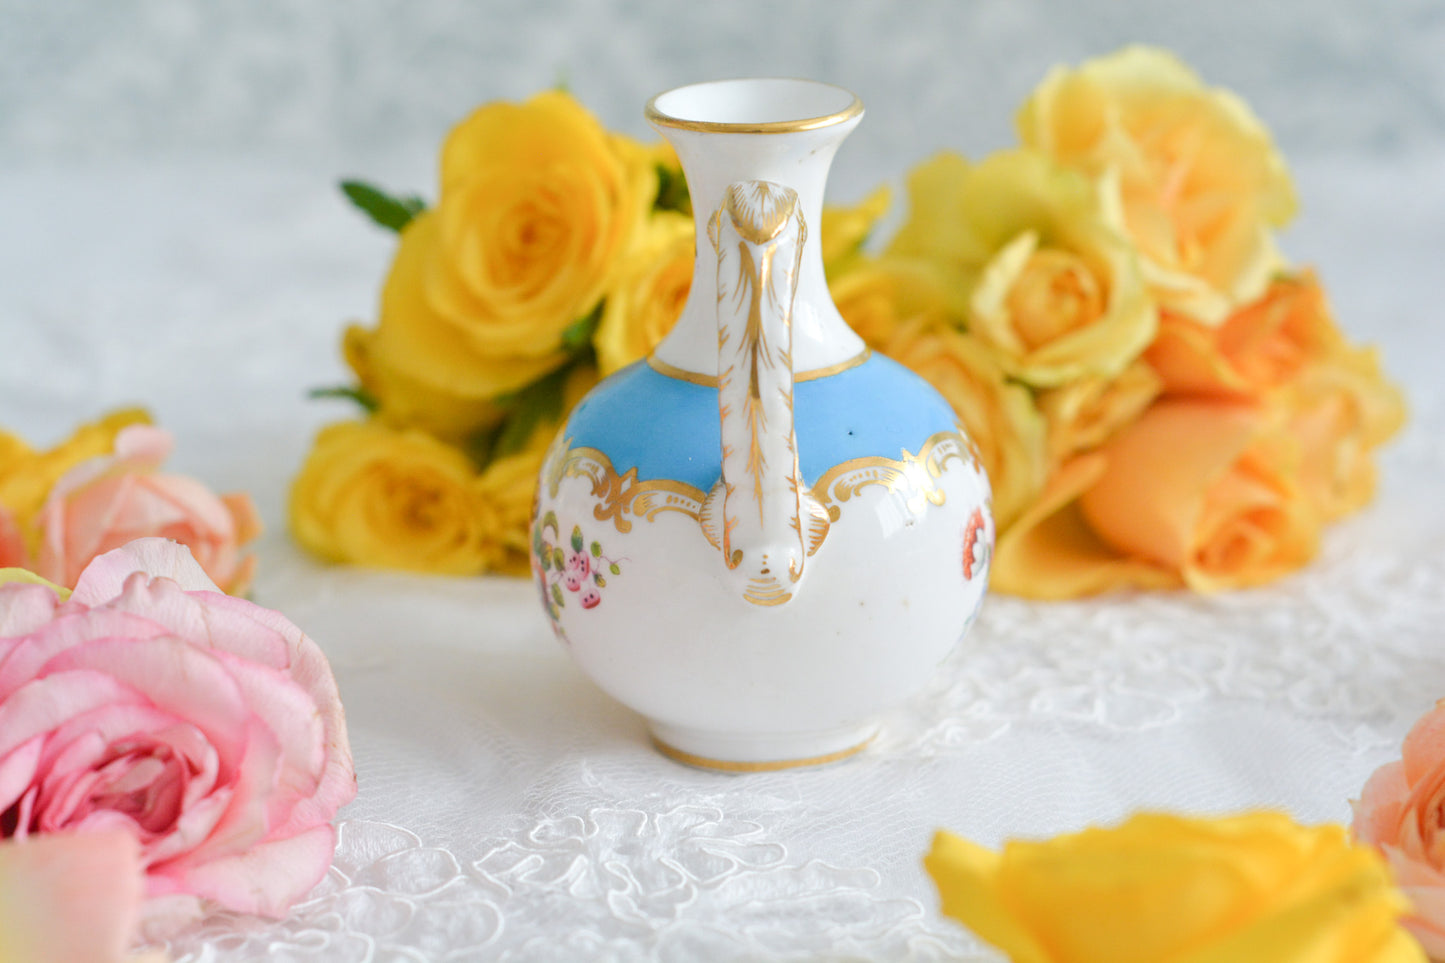 英国アンティーク、コールポートの小さな花瓶。小さくてもさすがアンティーク、細部まで凝った作りです。とてもエレガントなデザインでちょっとしたスペースを華やかに彩ります。